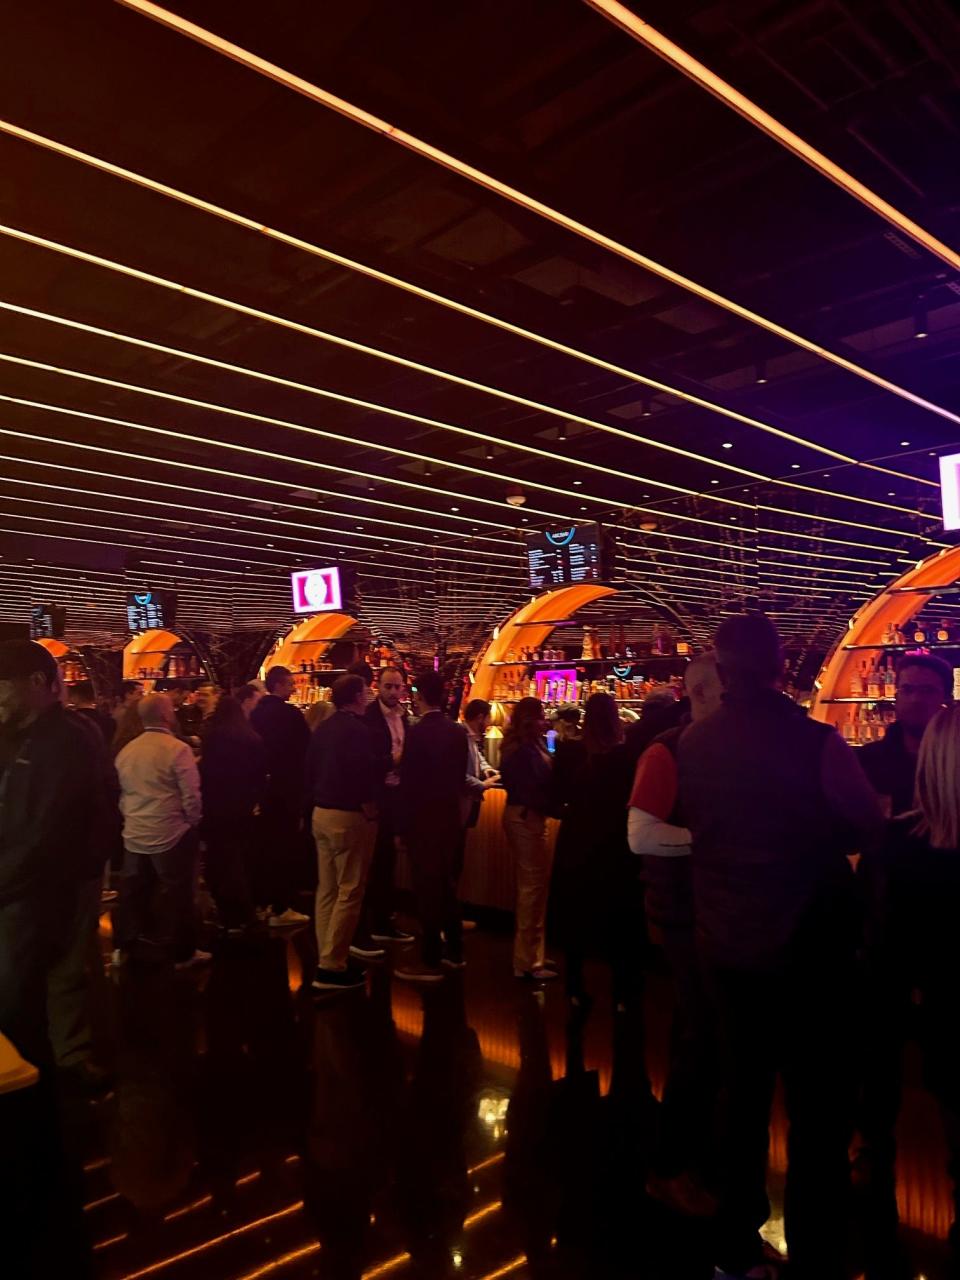 Bar inside the Las Vegas Sphere